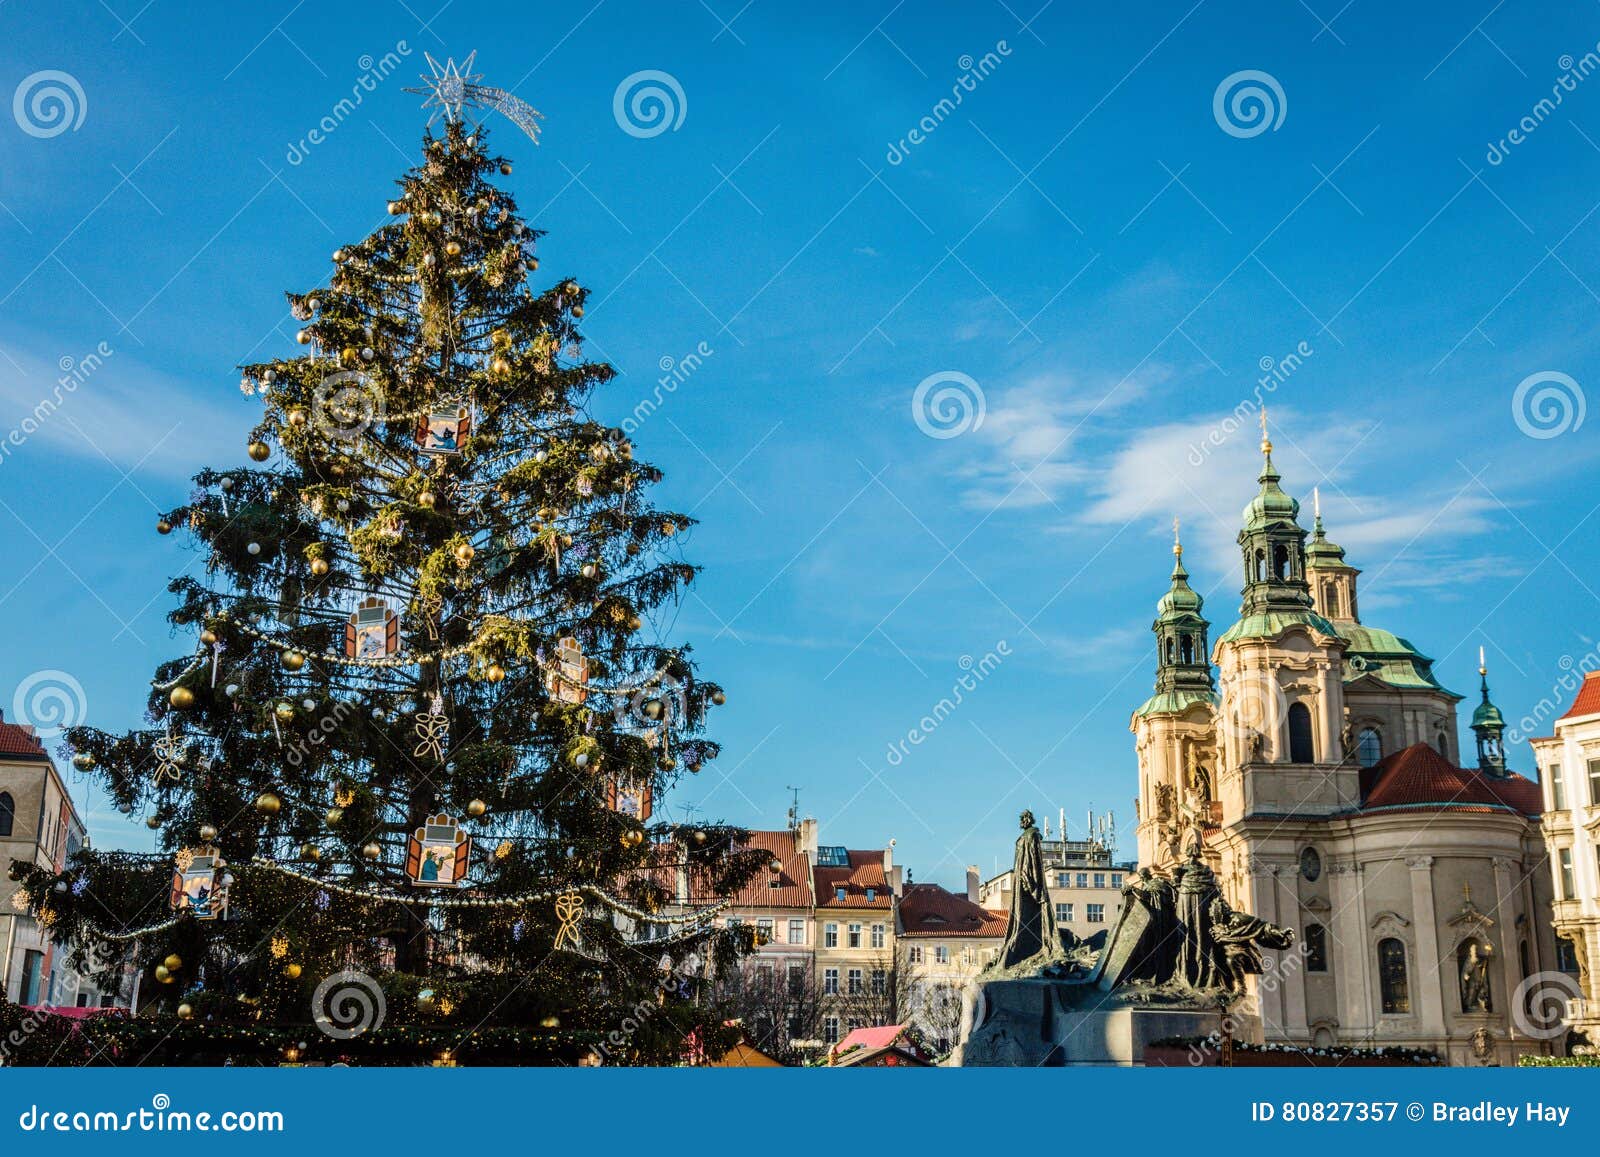 Рождественская елка и церковь St Nicholas, Праги, чехии. Рождественская елка города гривы и церковь St Nicholas, Праги, чехии